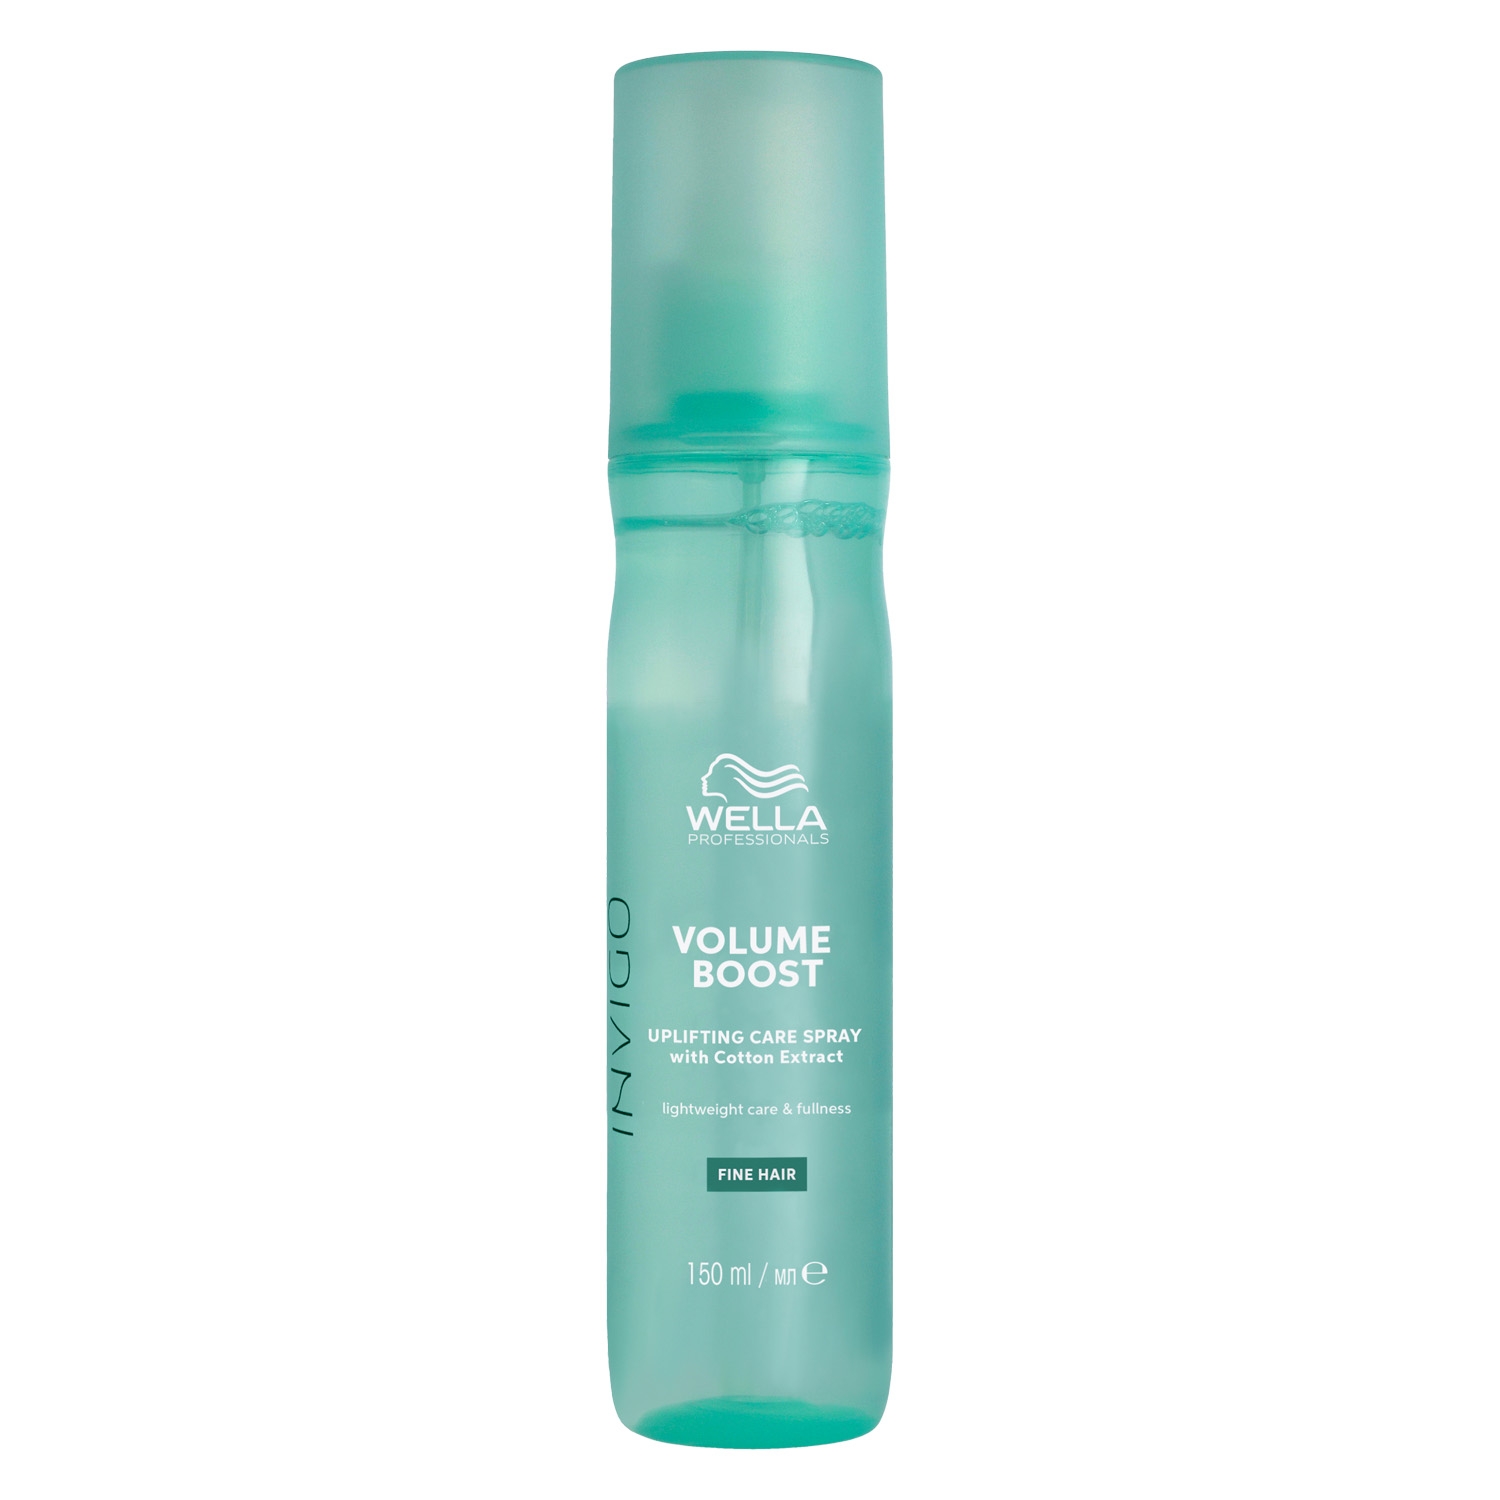 Produktbild von Invigo Volume Boost - Uplifting Care Spray